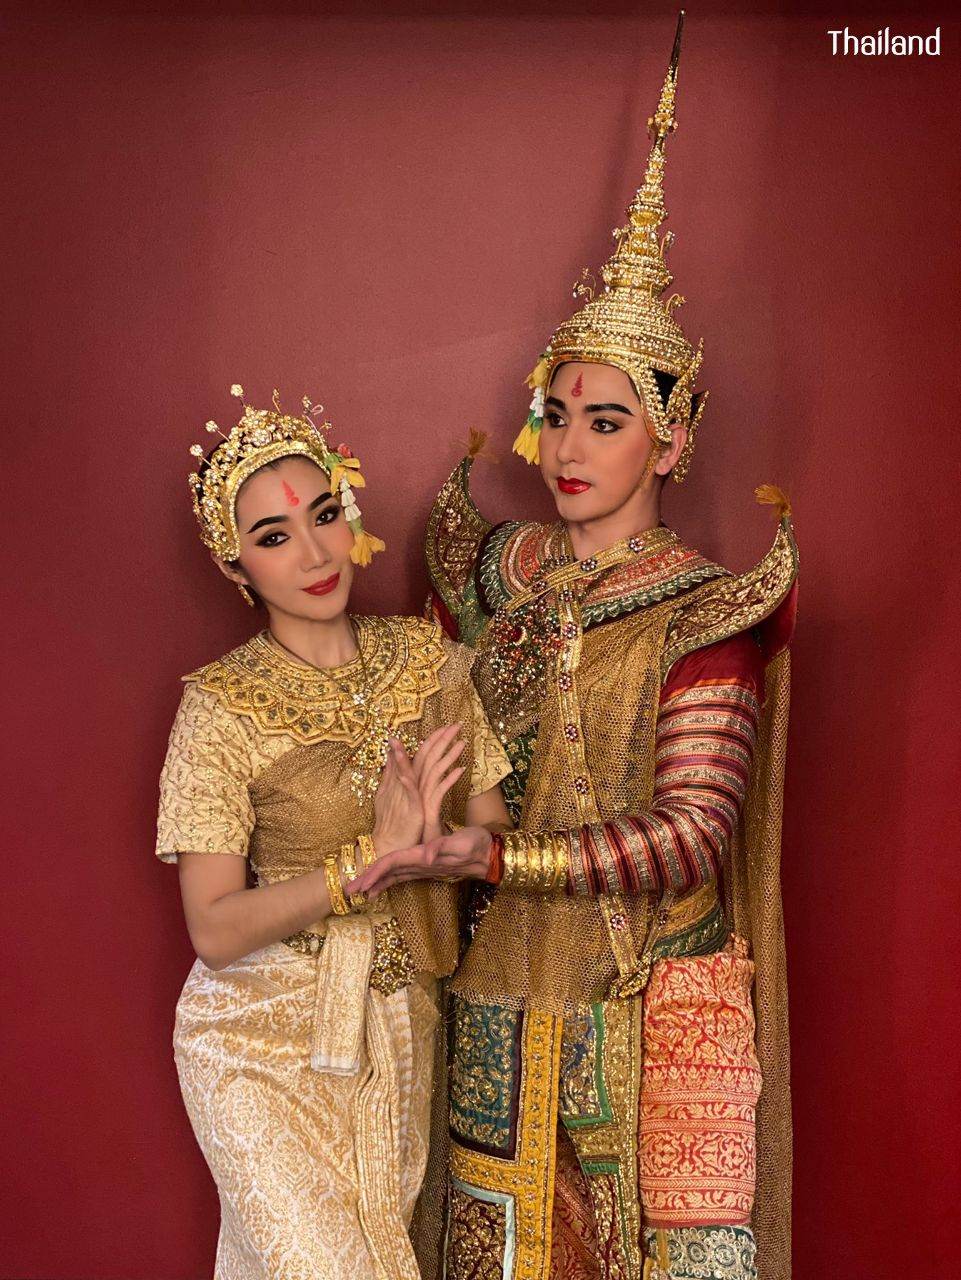 Thai Khon Dancers in Paris 🇫🇷 | THAILAND 🇹🇭